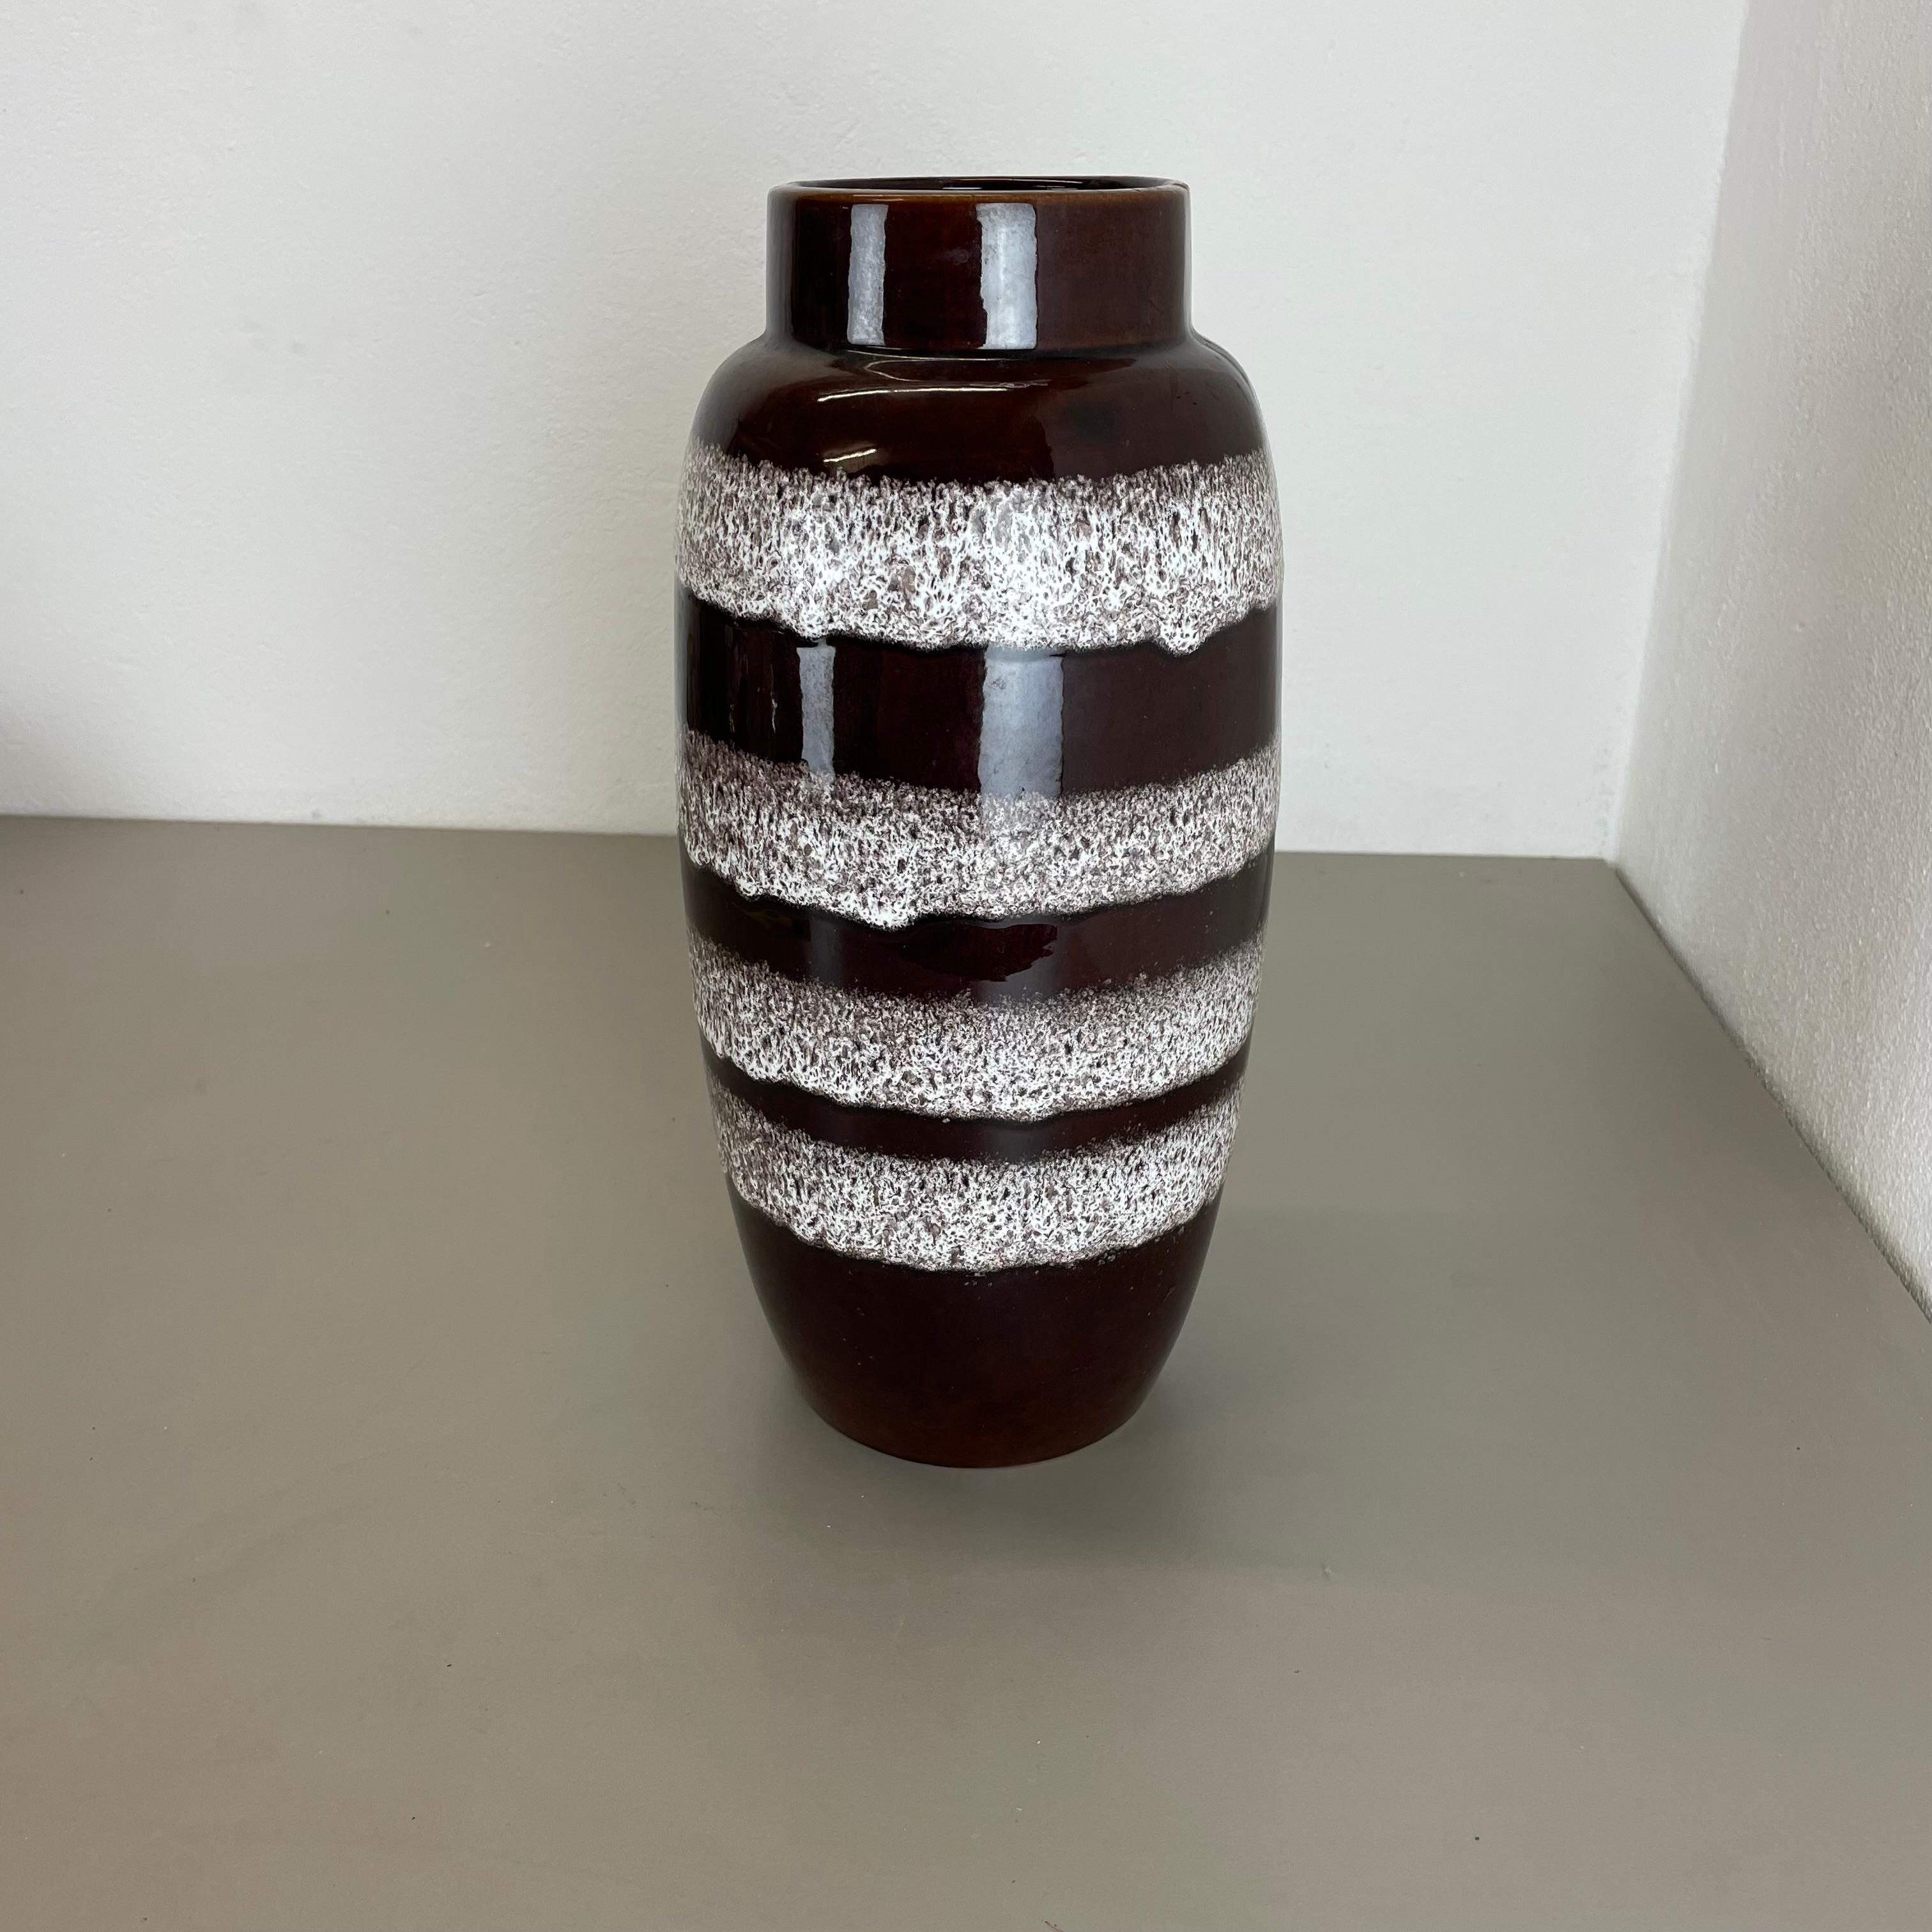 Artikel:

Fat Lava Art Vase extra große Version


Produzent:

Scheurich, Deutschland



Jahrzehnt:

1970s


Beschreibung:

Diese originelle Vintage-Vase wurde in den 1970er Jahren in Deutschland hergestellt. Sie ist aus Keramik in Fettlava-Optik mit